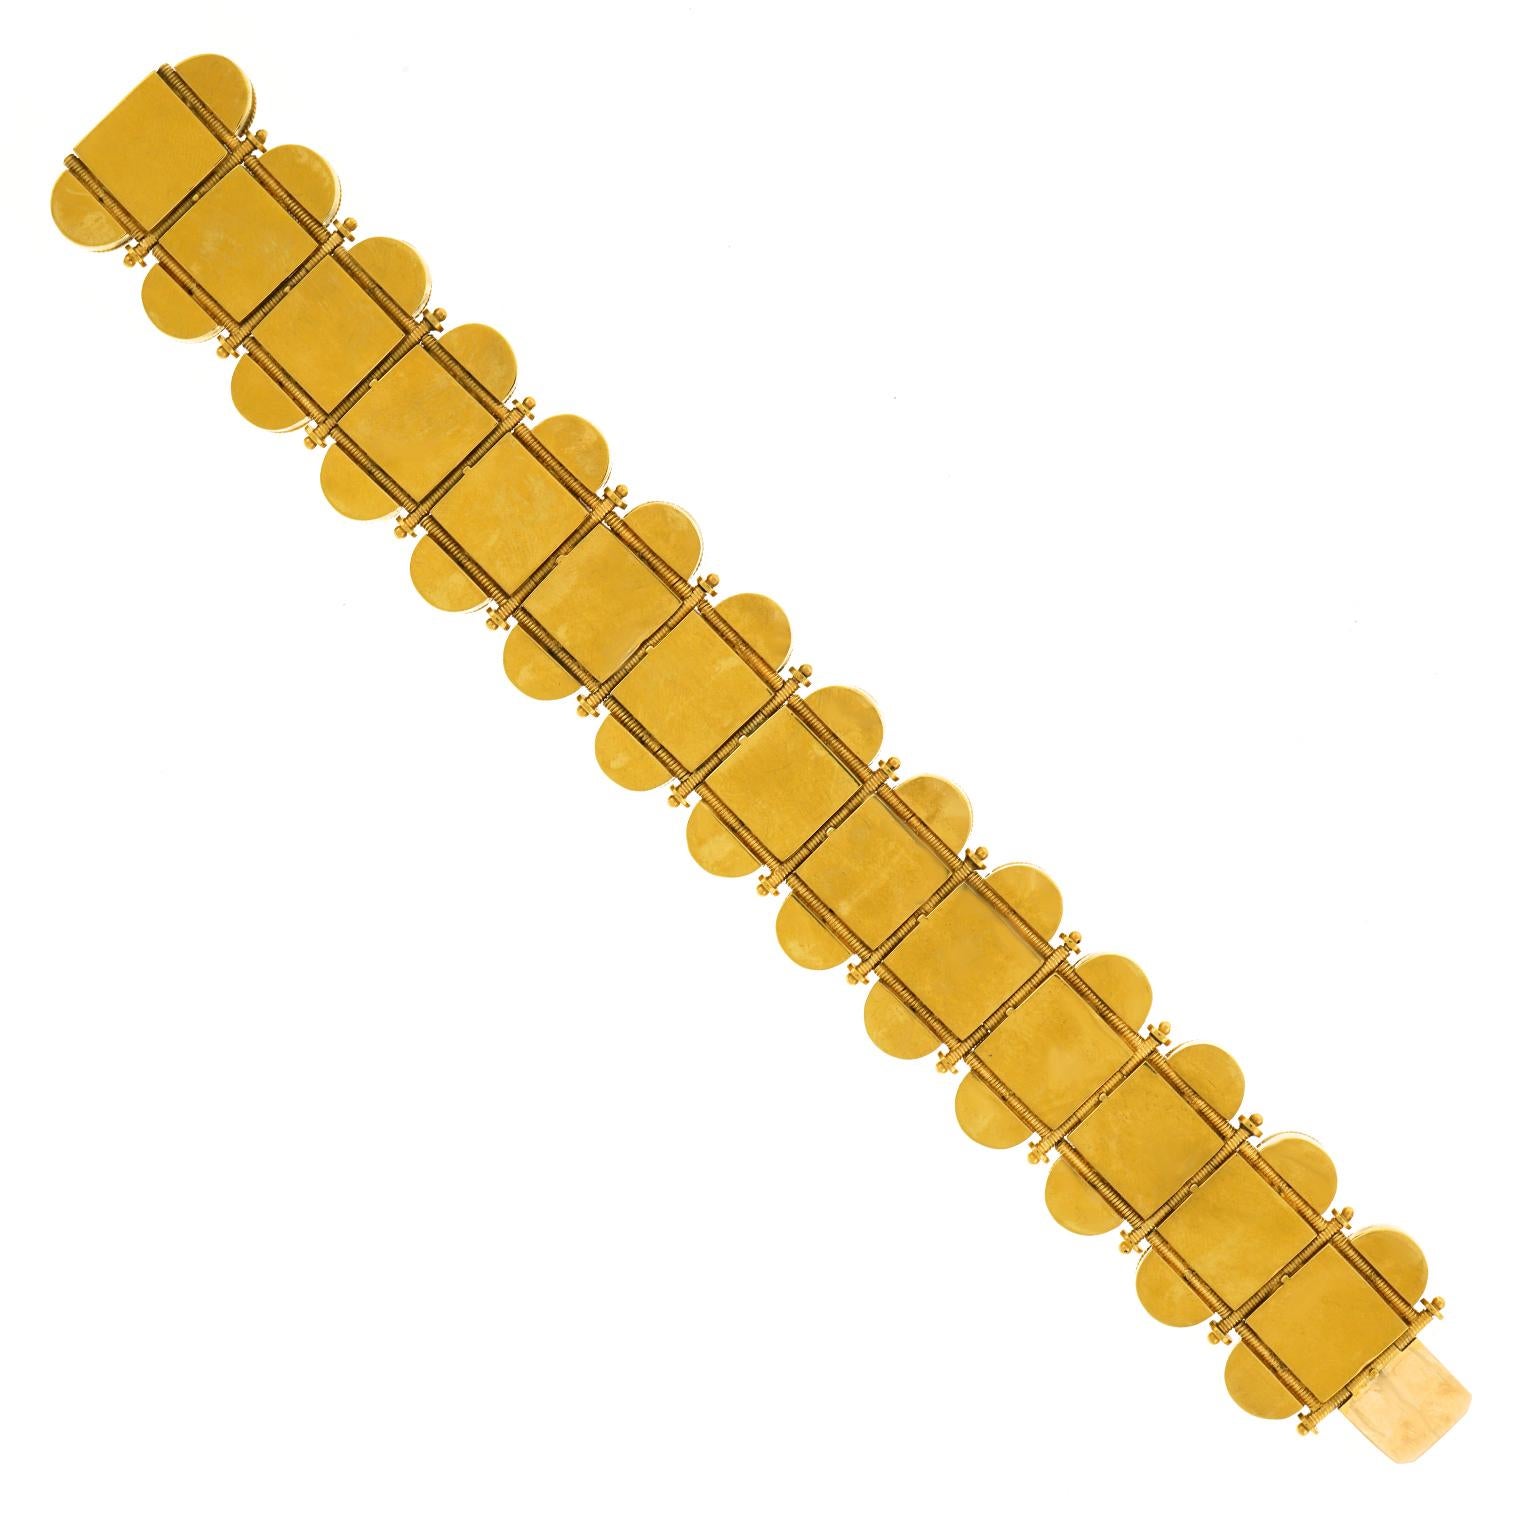 Fabulous Etruscan Revival Gold Bracelet 1